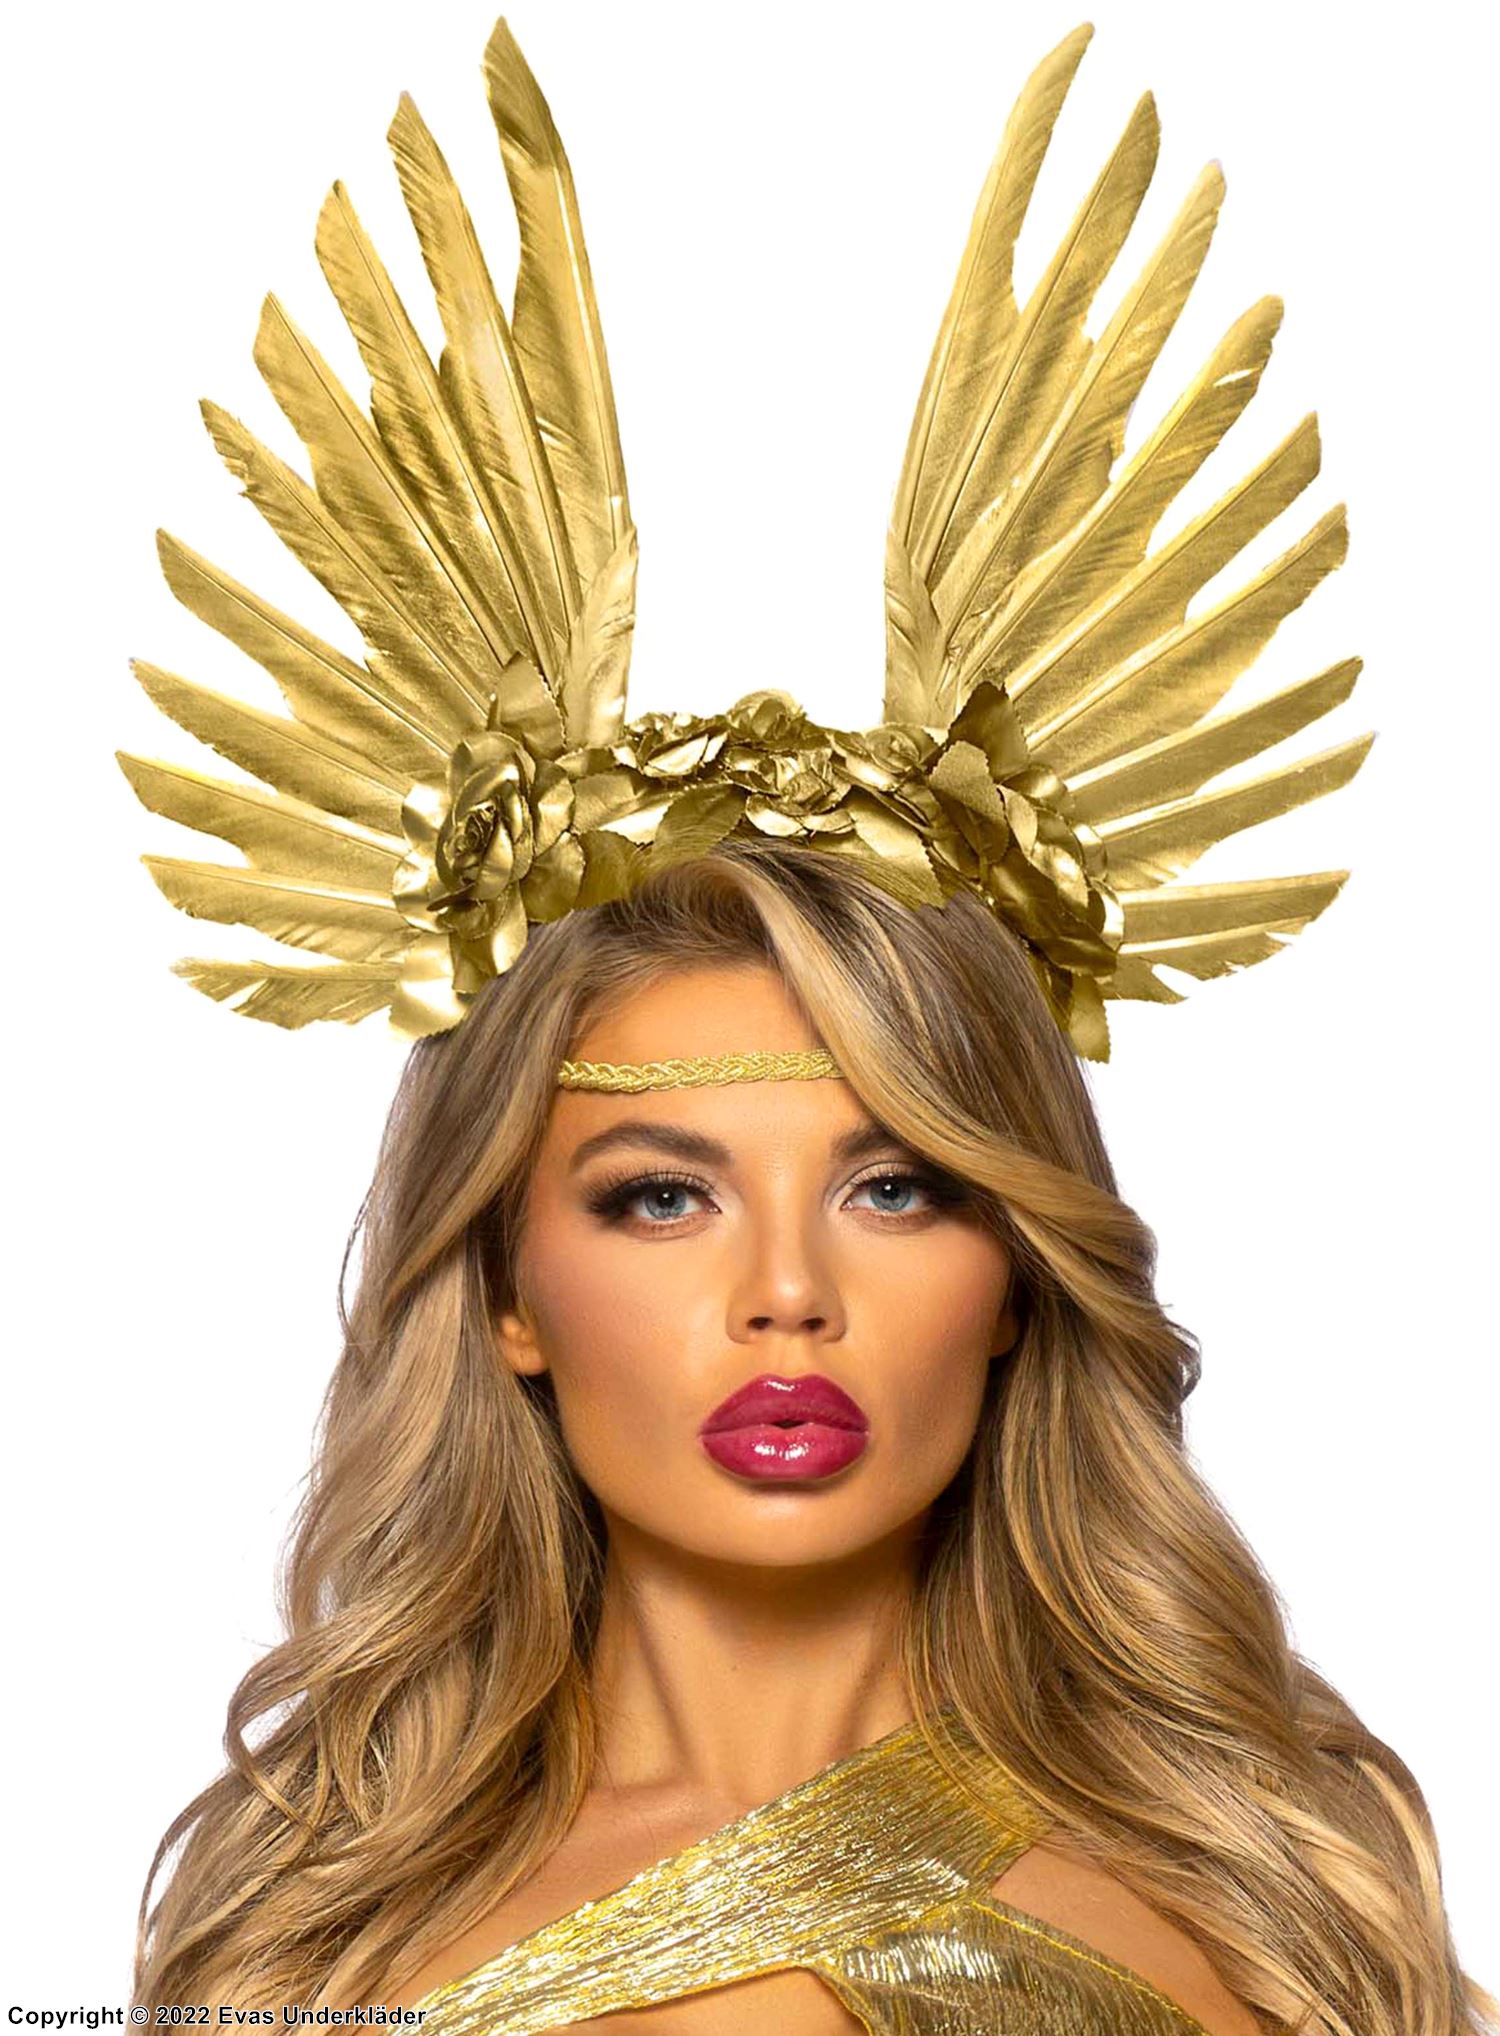 Golden angel, headgear, wings, feathers, flowers